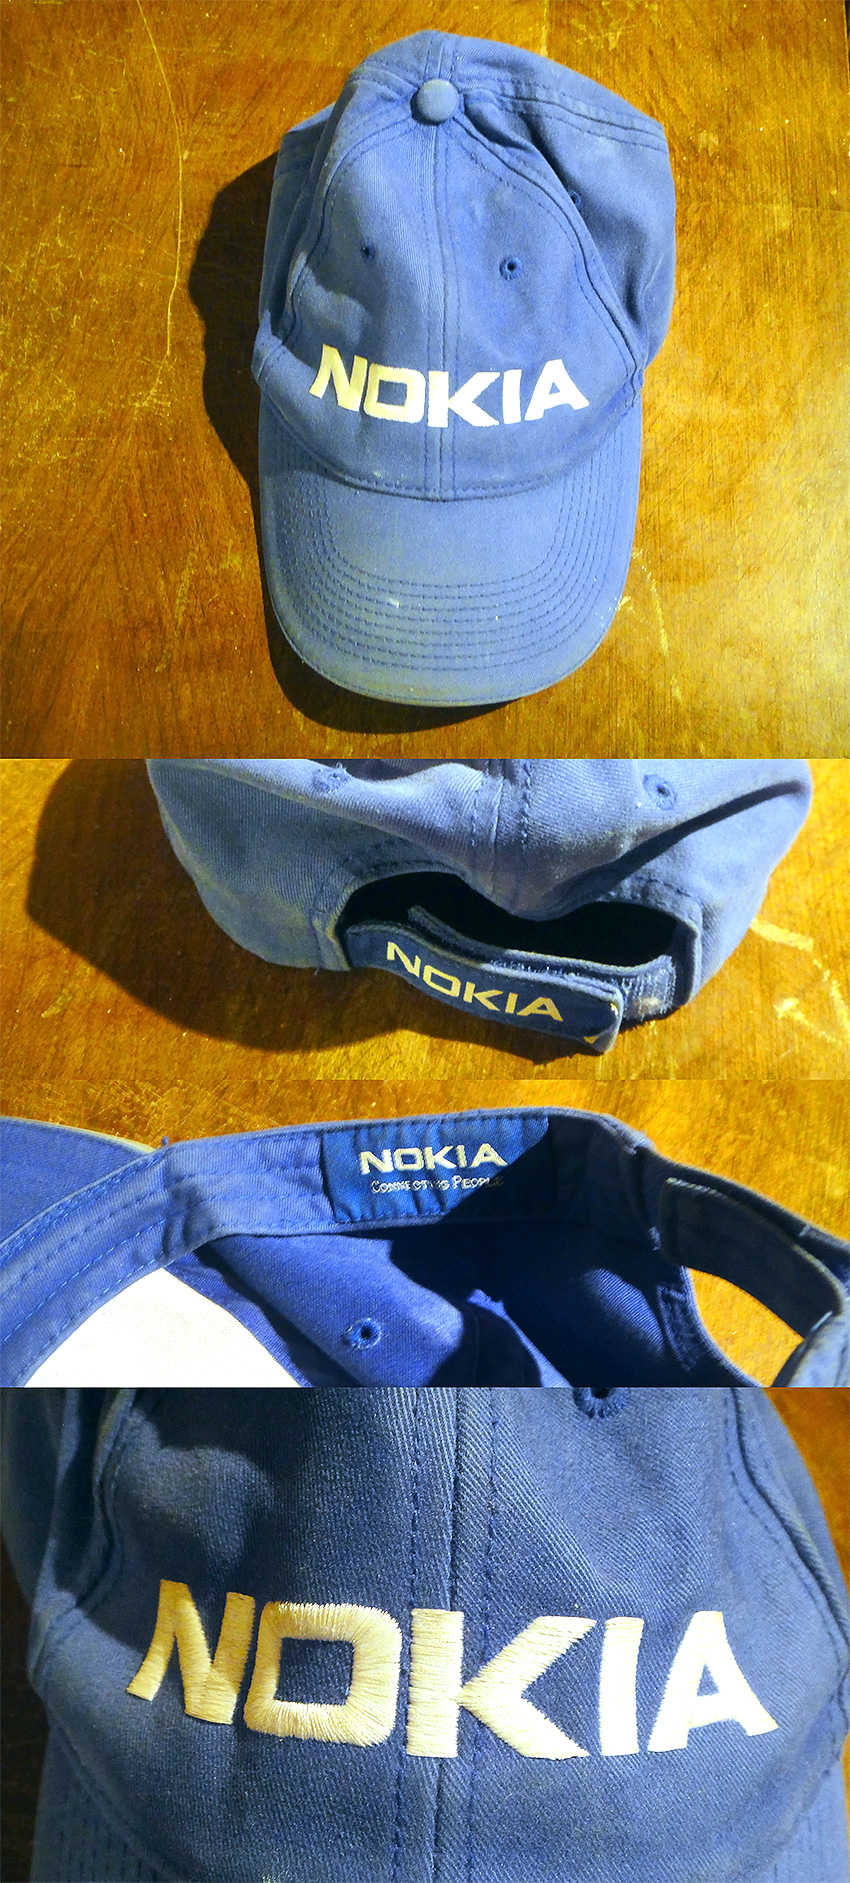 Nokia1